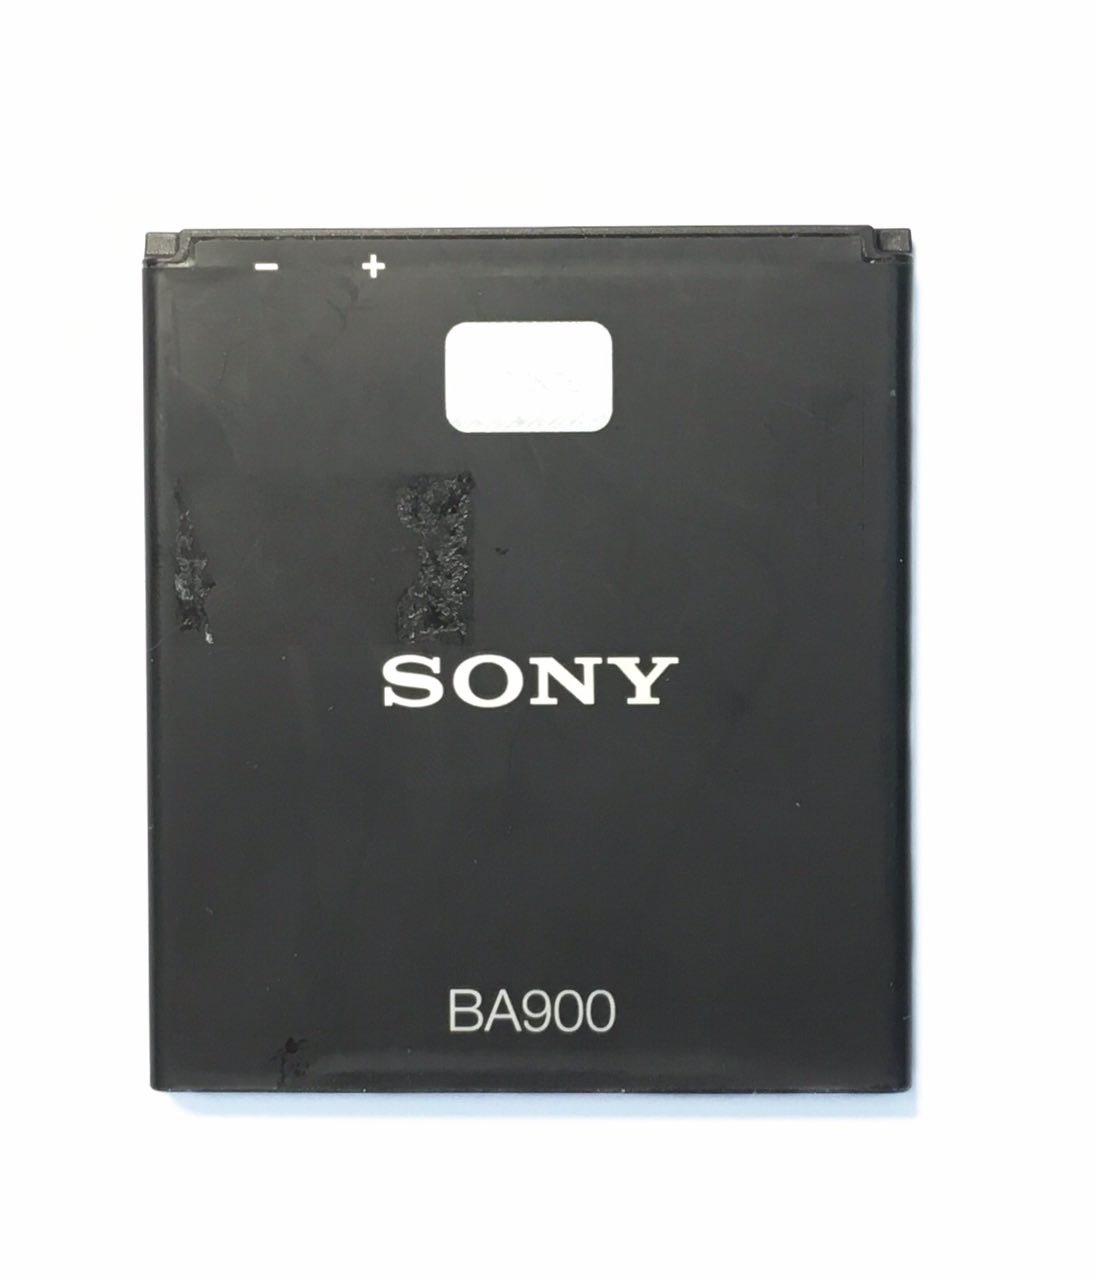 Sony xperia батарея. Sony Xperia ba900. Sony Xperia c2005 батарея. Sony Xperia 2014 аккумулятор. Sony Xperia ba900 телефон.